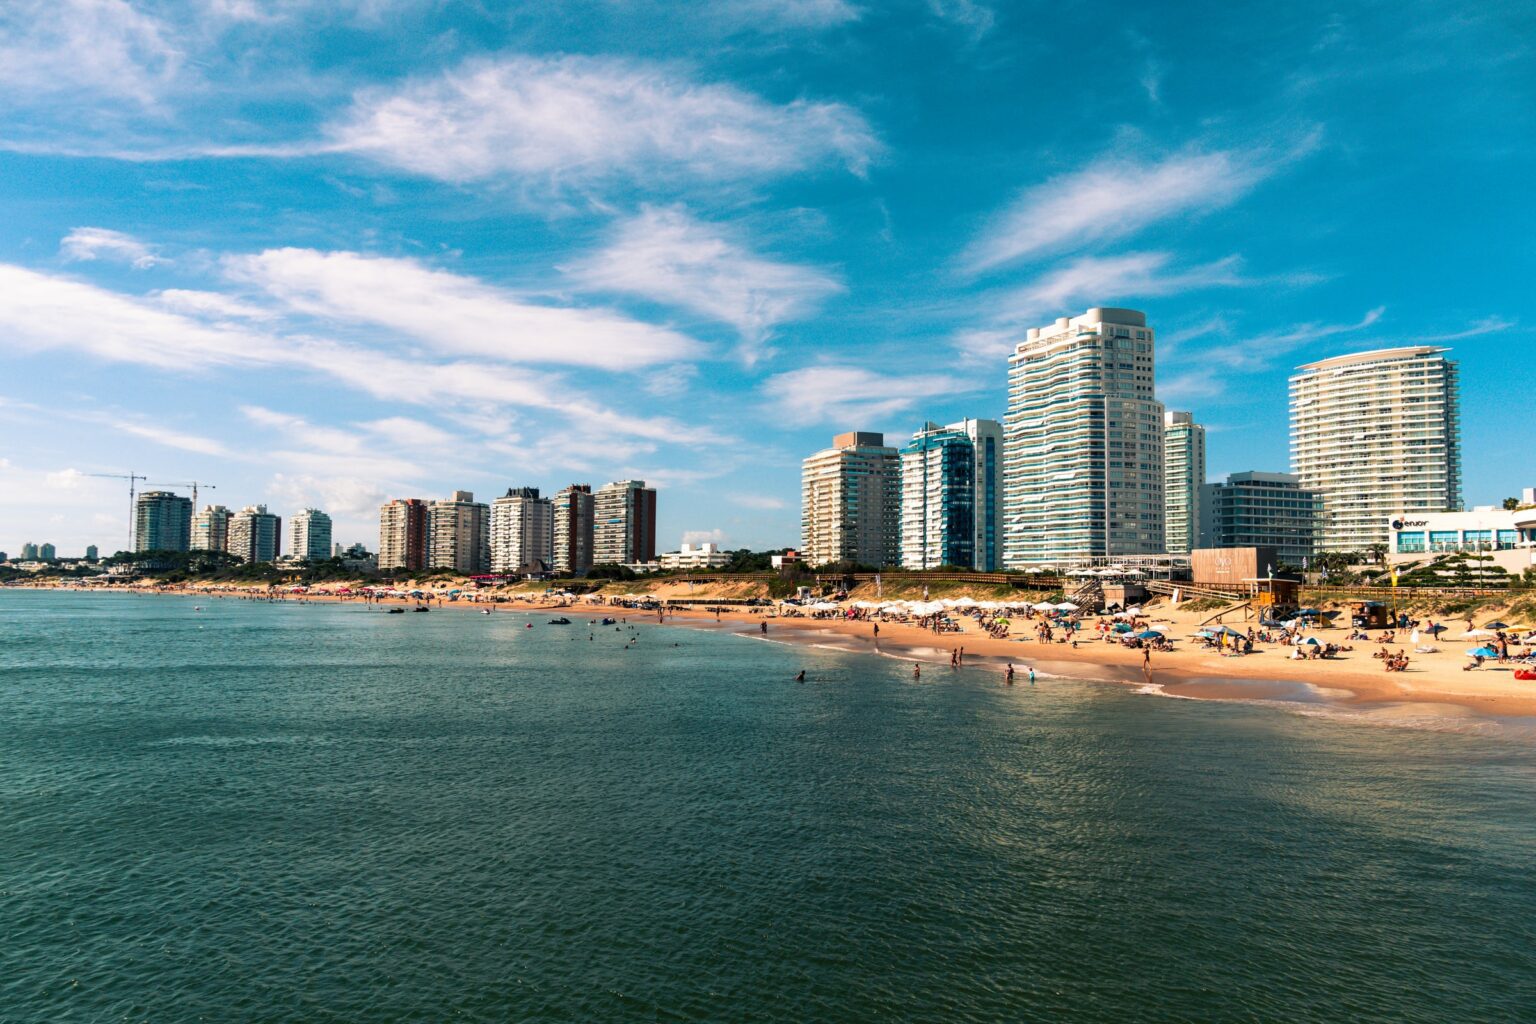 Morar No Uruguai Dicas Vistos E Melhores Cidades Para Viver Edublin 7916